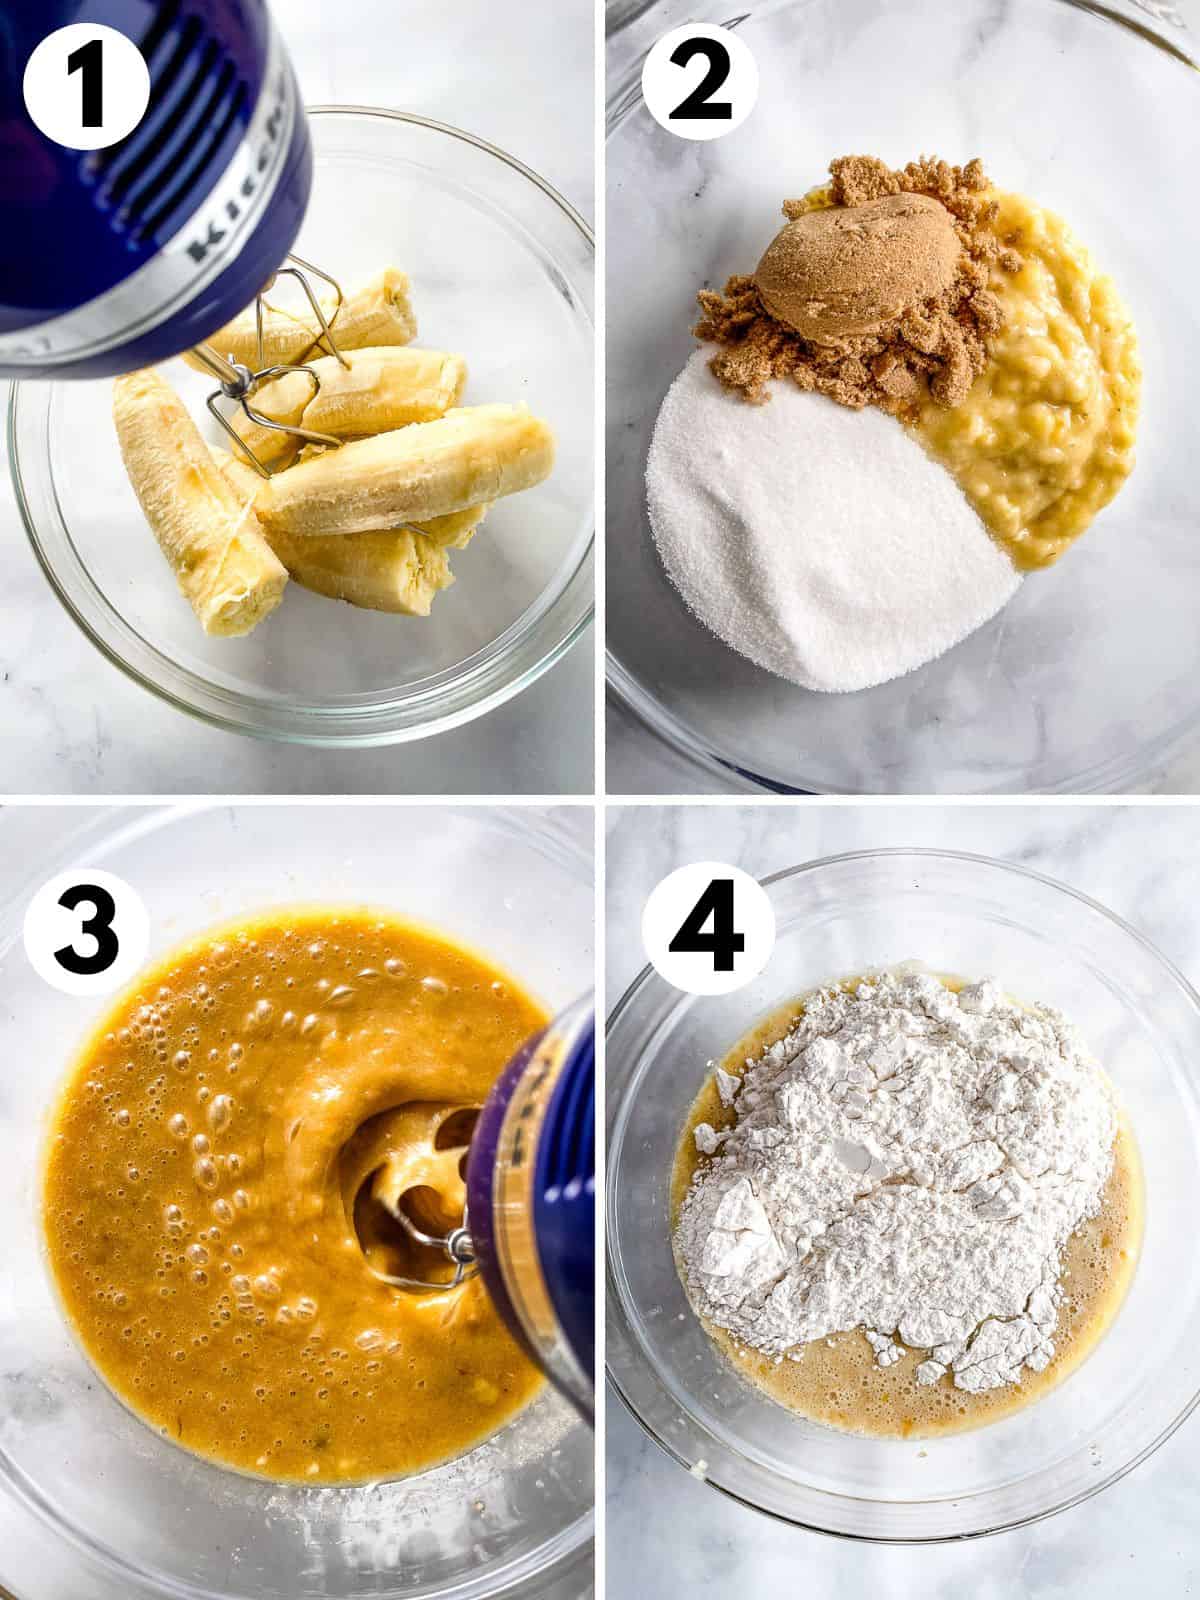 Four images. 1. Mixing ripe bananas. 2. Mashed bananas, sugar, and brown sugar in a bowl. 3. Banana sugar mixture in a bowl. 4. Adding gluten-free flour to the banana-sugar mixture.